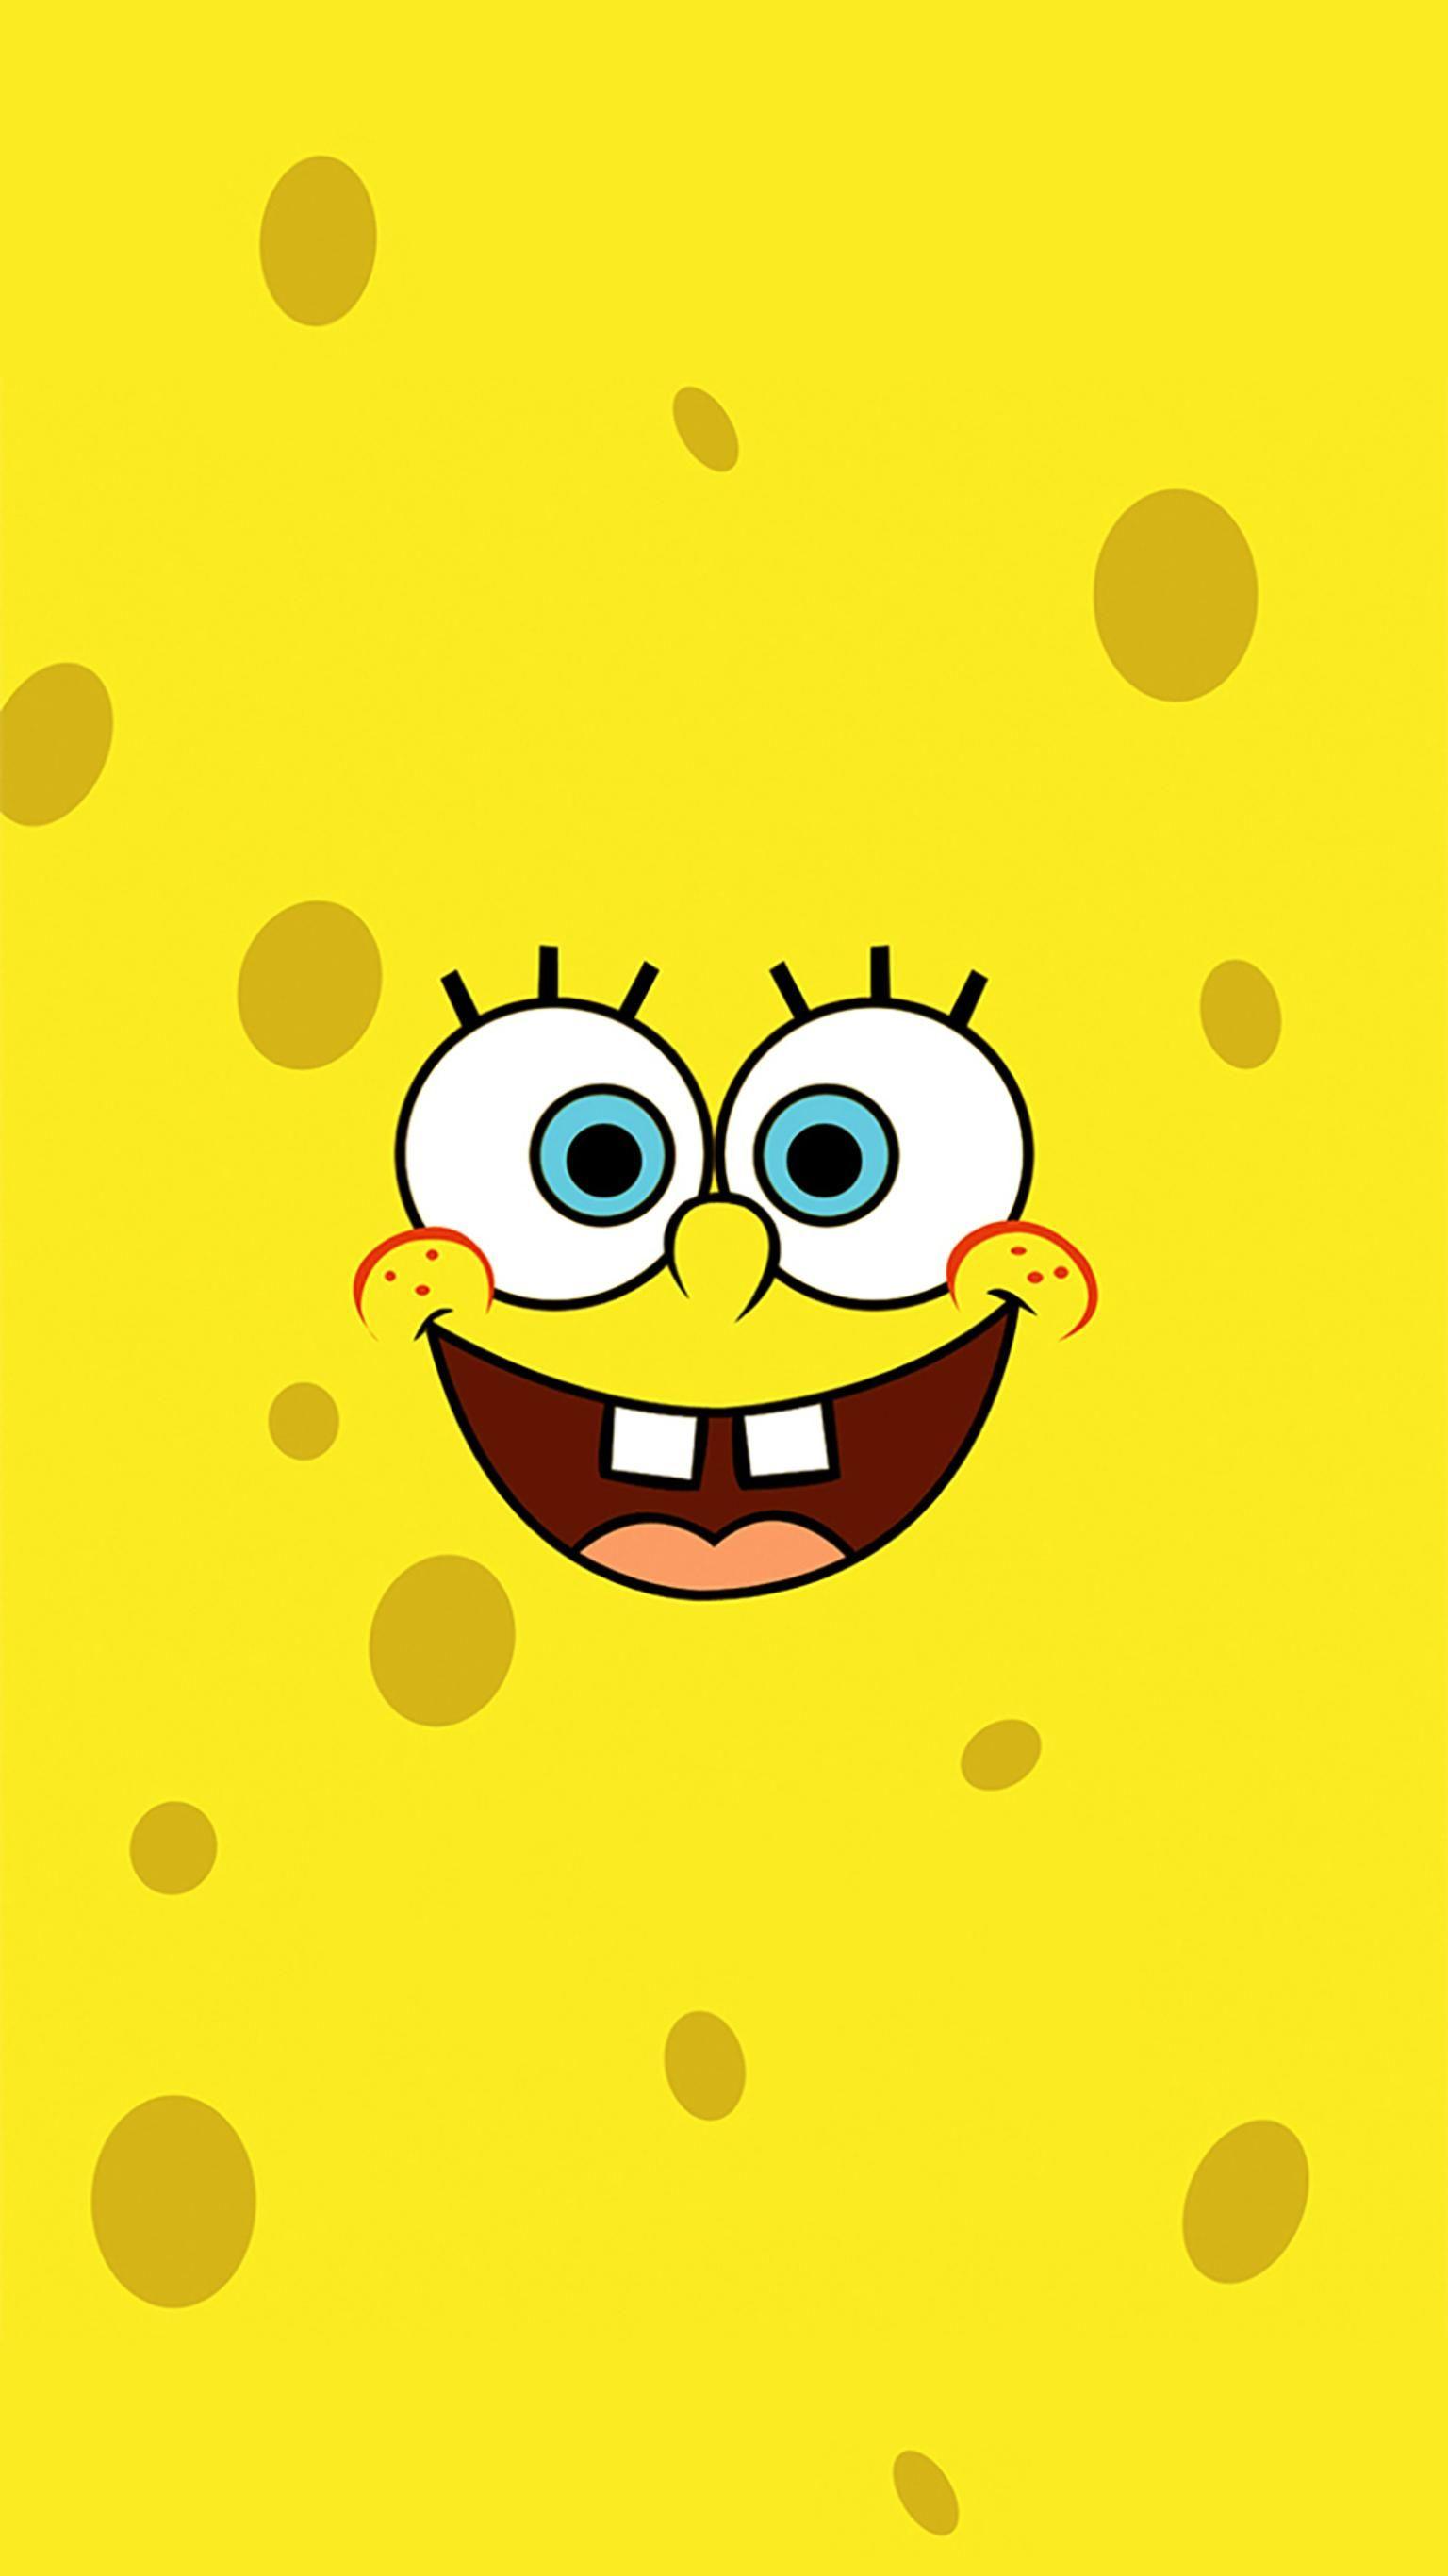 SpongeBob SquarePants Phone Wallpaper. Spongebob iphone